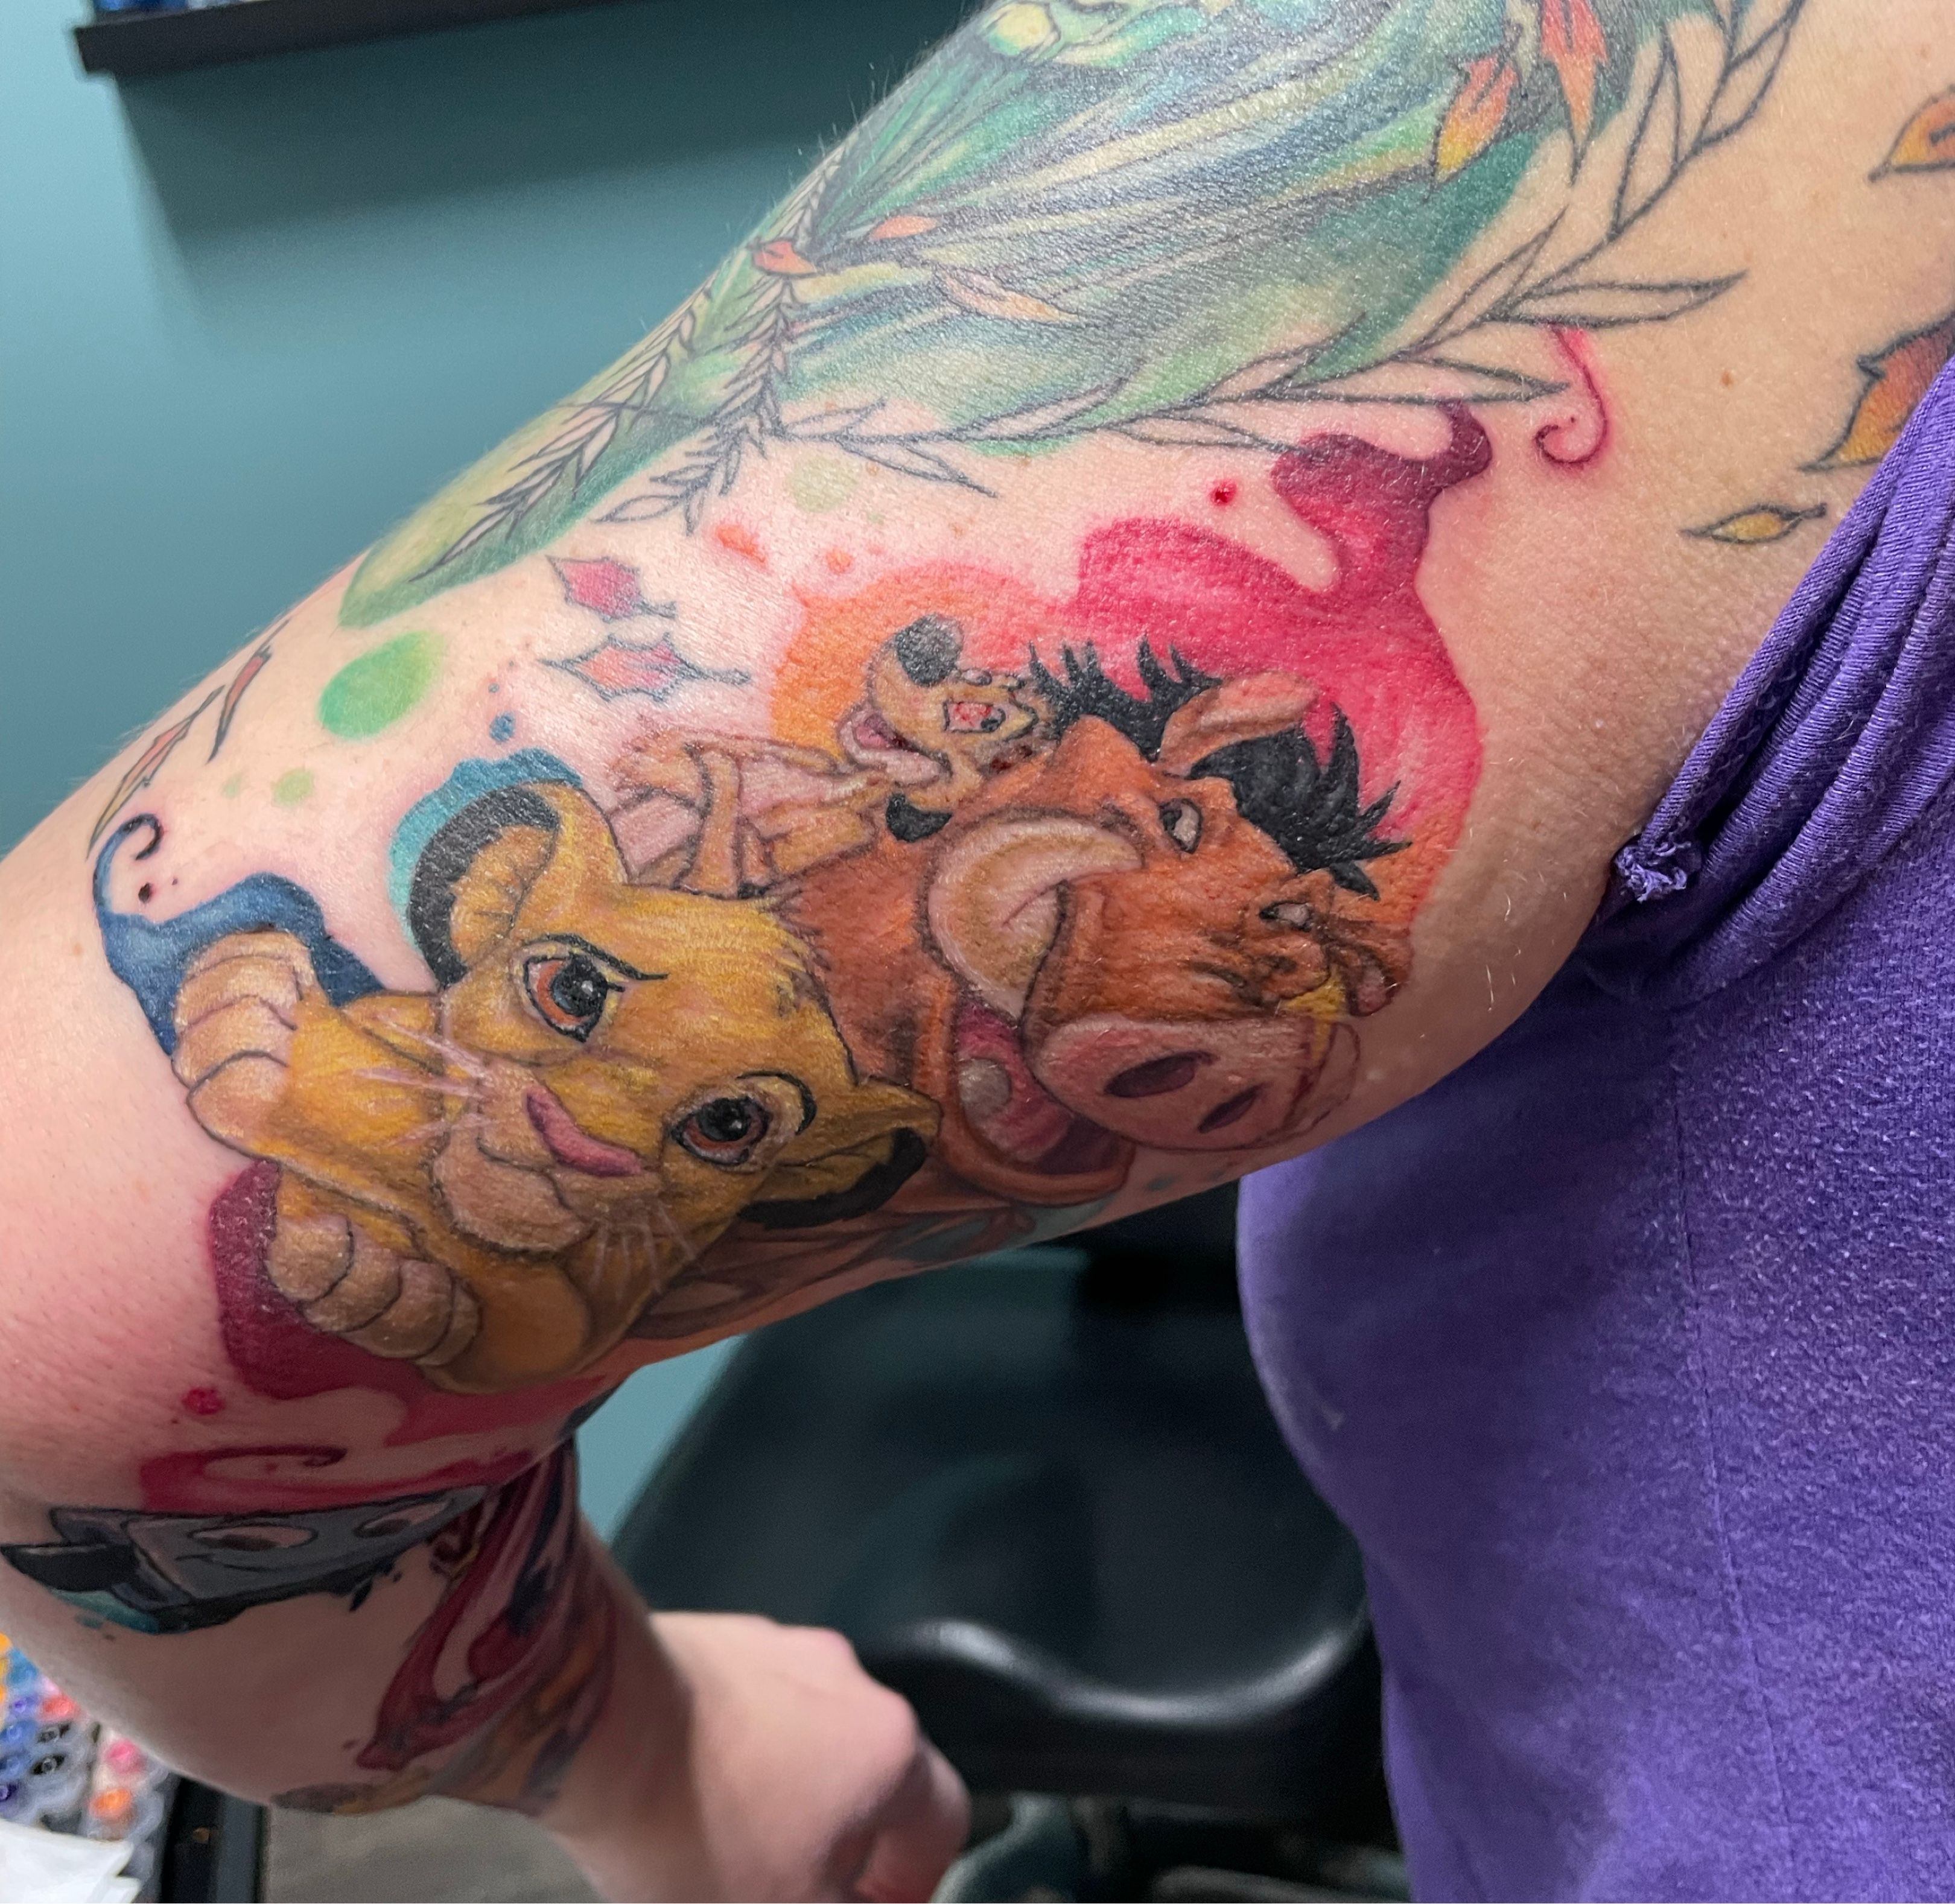 125 Lion Tattoo Ideas That Will Make You Roar  Wild Tattoo Art